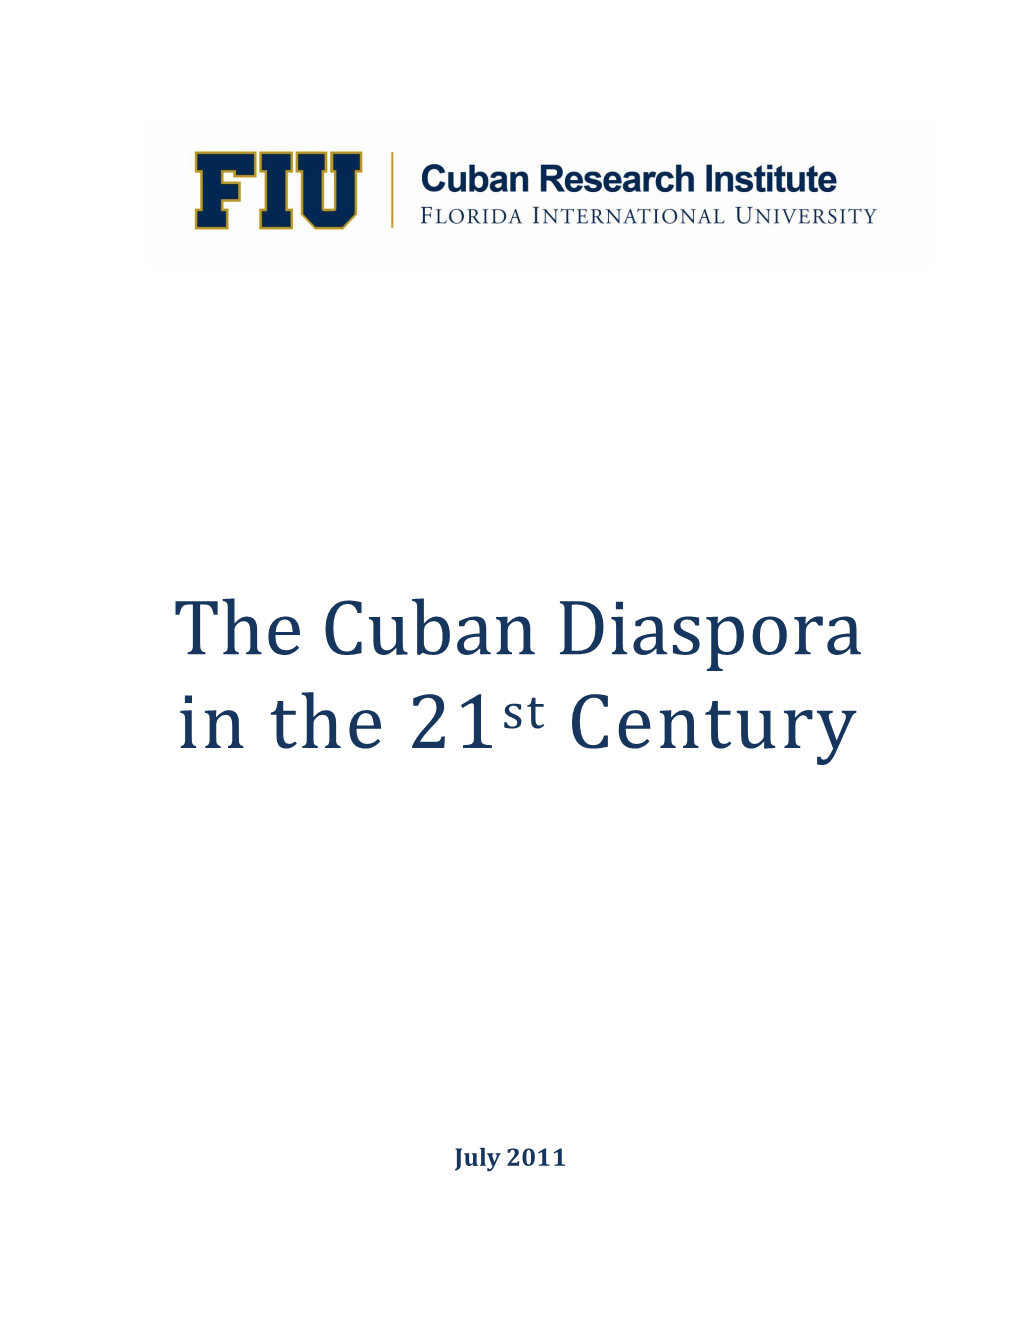 Cuban Diaspora in the 21St Century